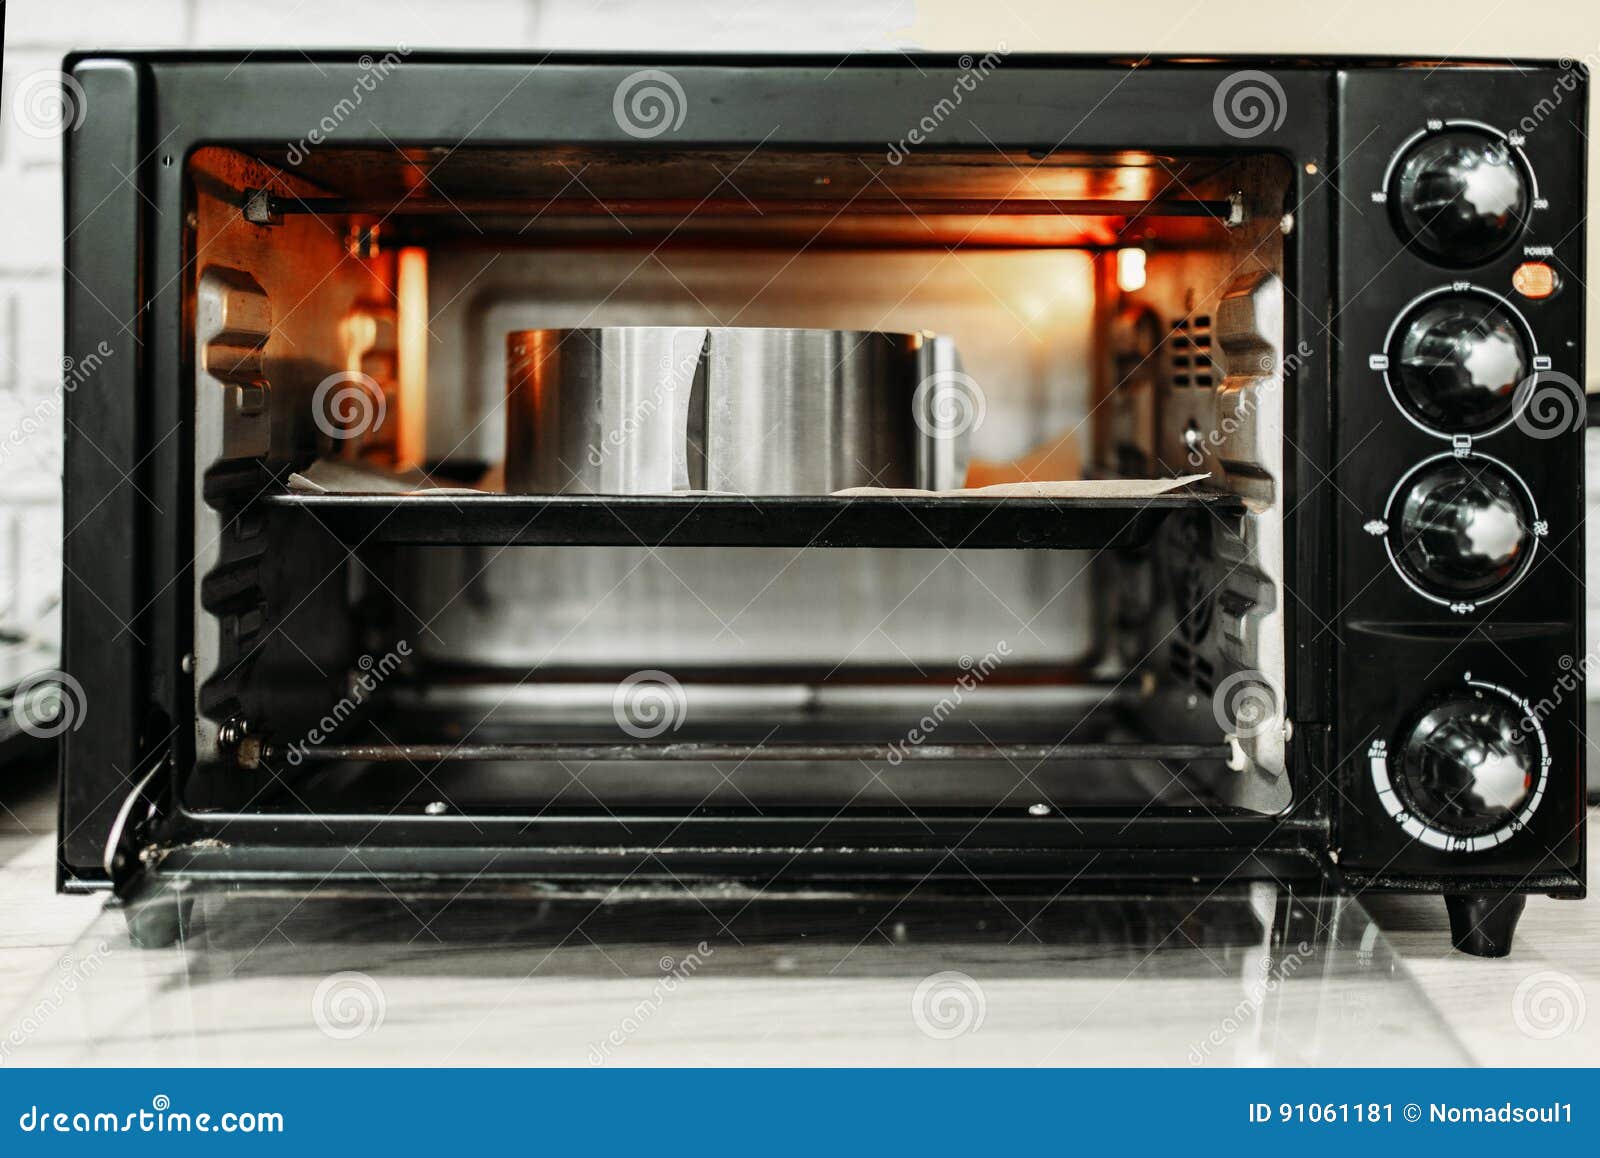 Mini Horno Eléctrico Para Cocinar Hecho En Casa Imagen de archivo - Imagen  de torta, torcer: 91061181